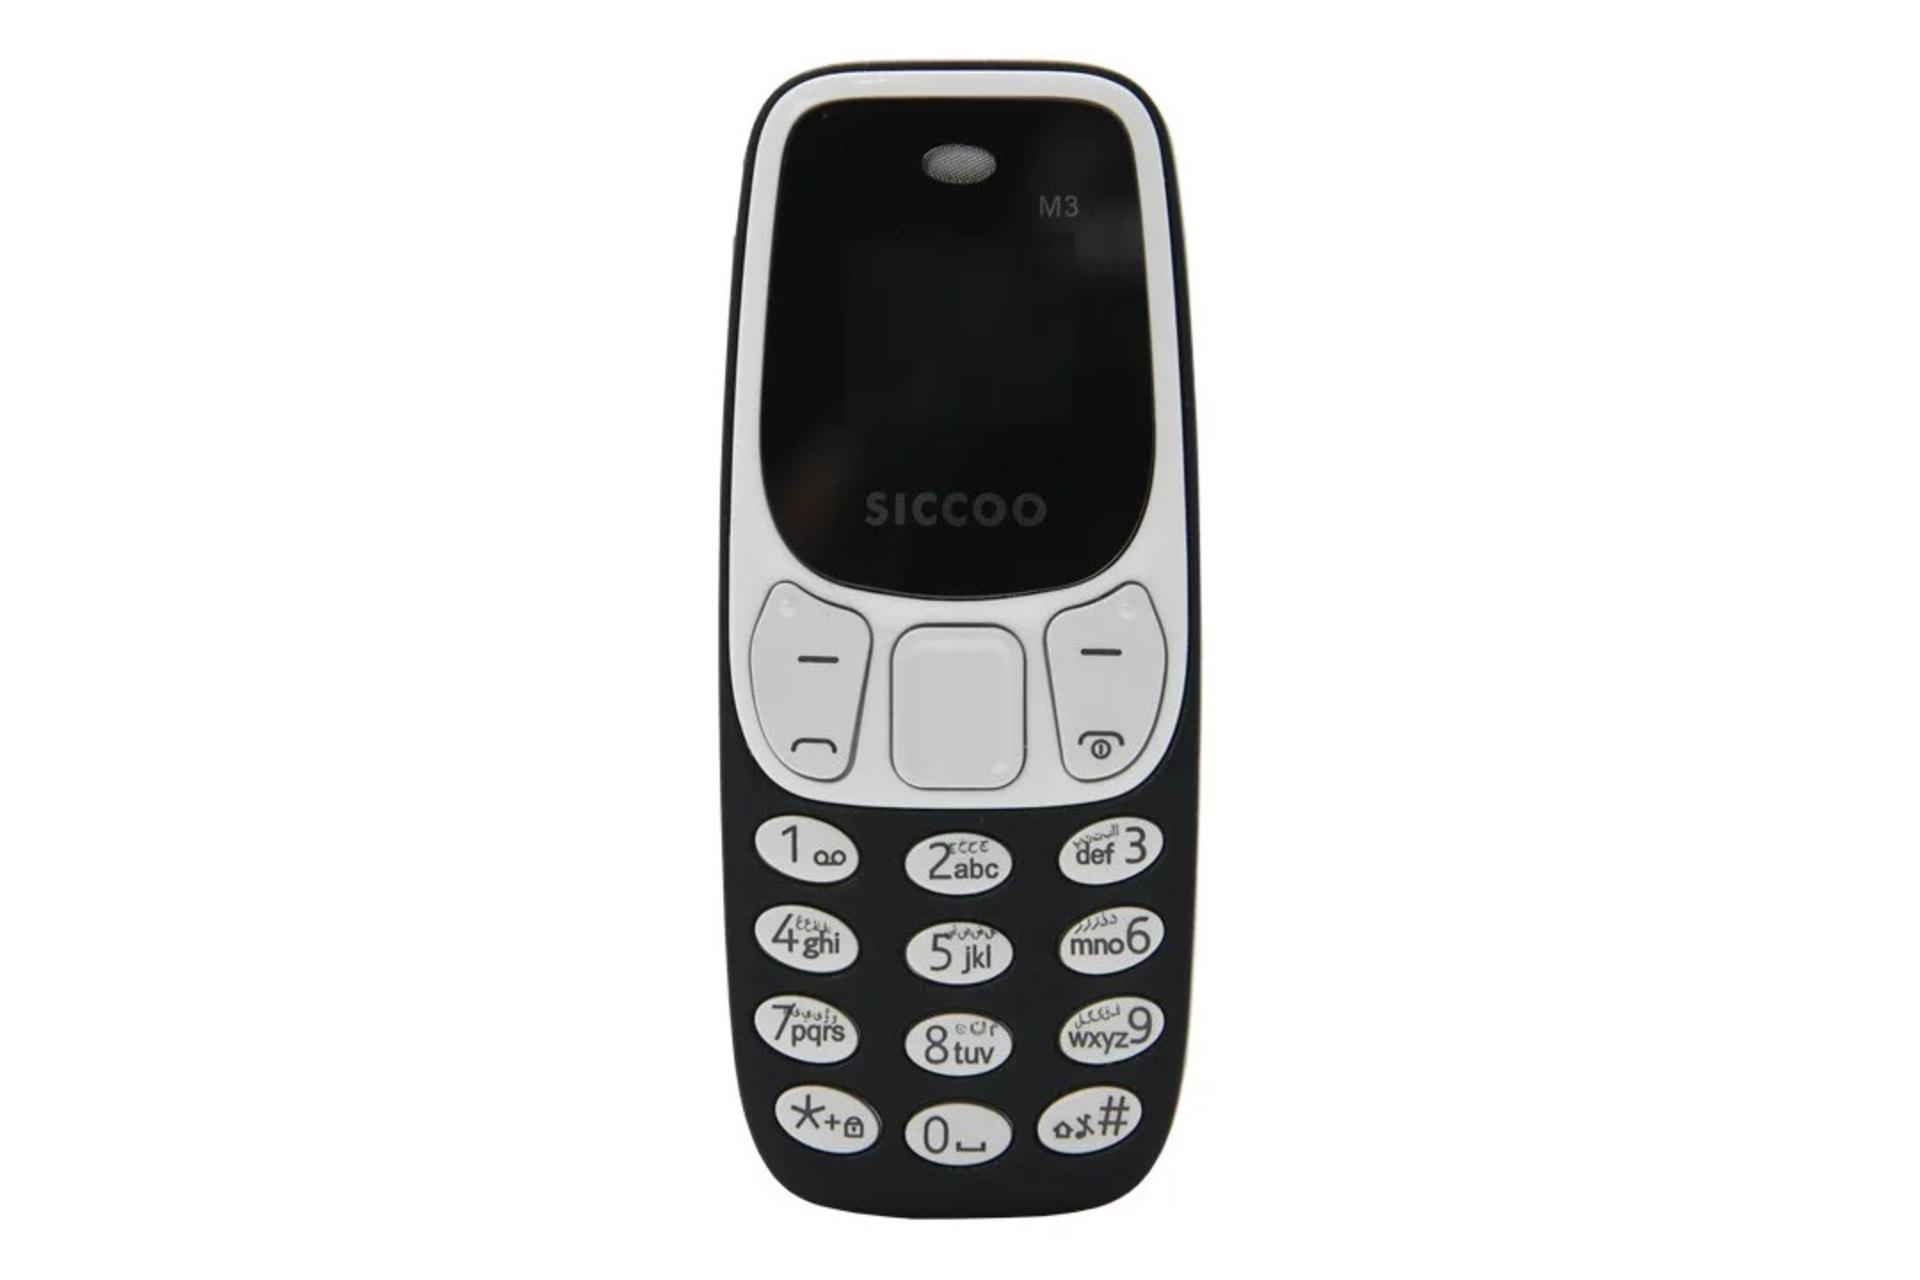 پنل جلو و صفحه کلید گوشی موبایل سیکو SICCOO M3 مشکی و سفید